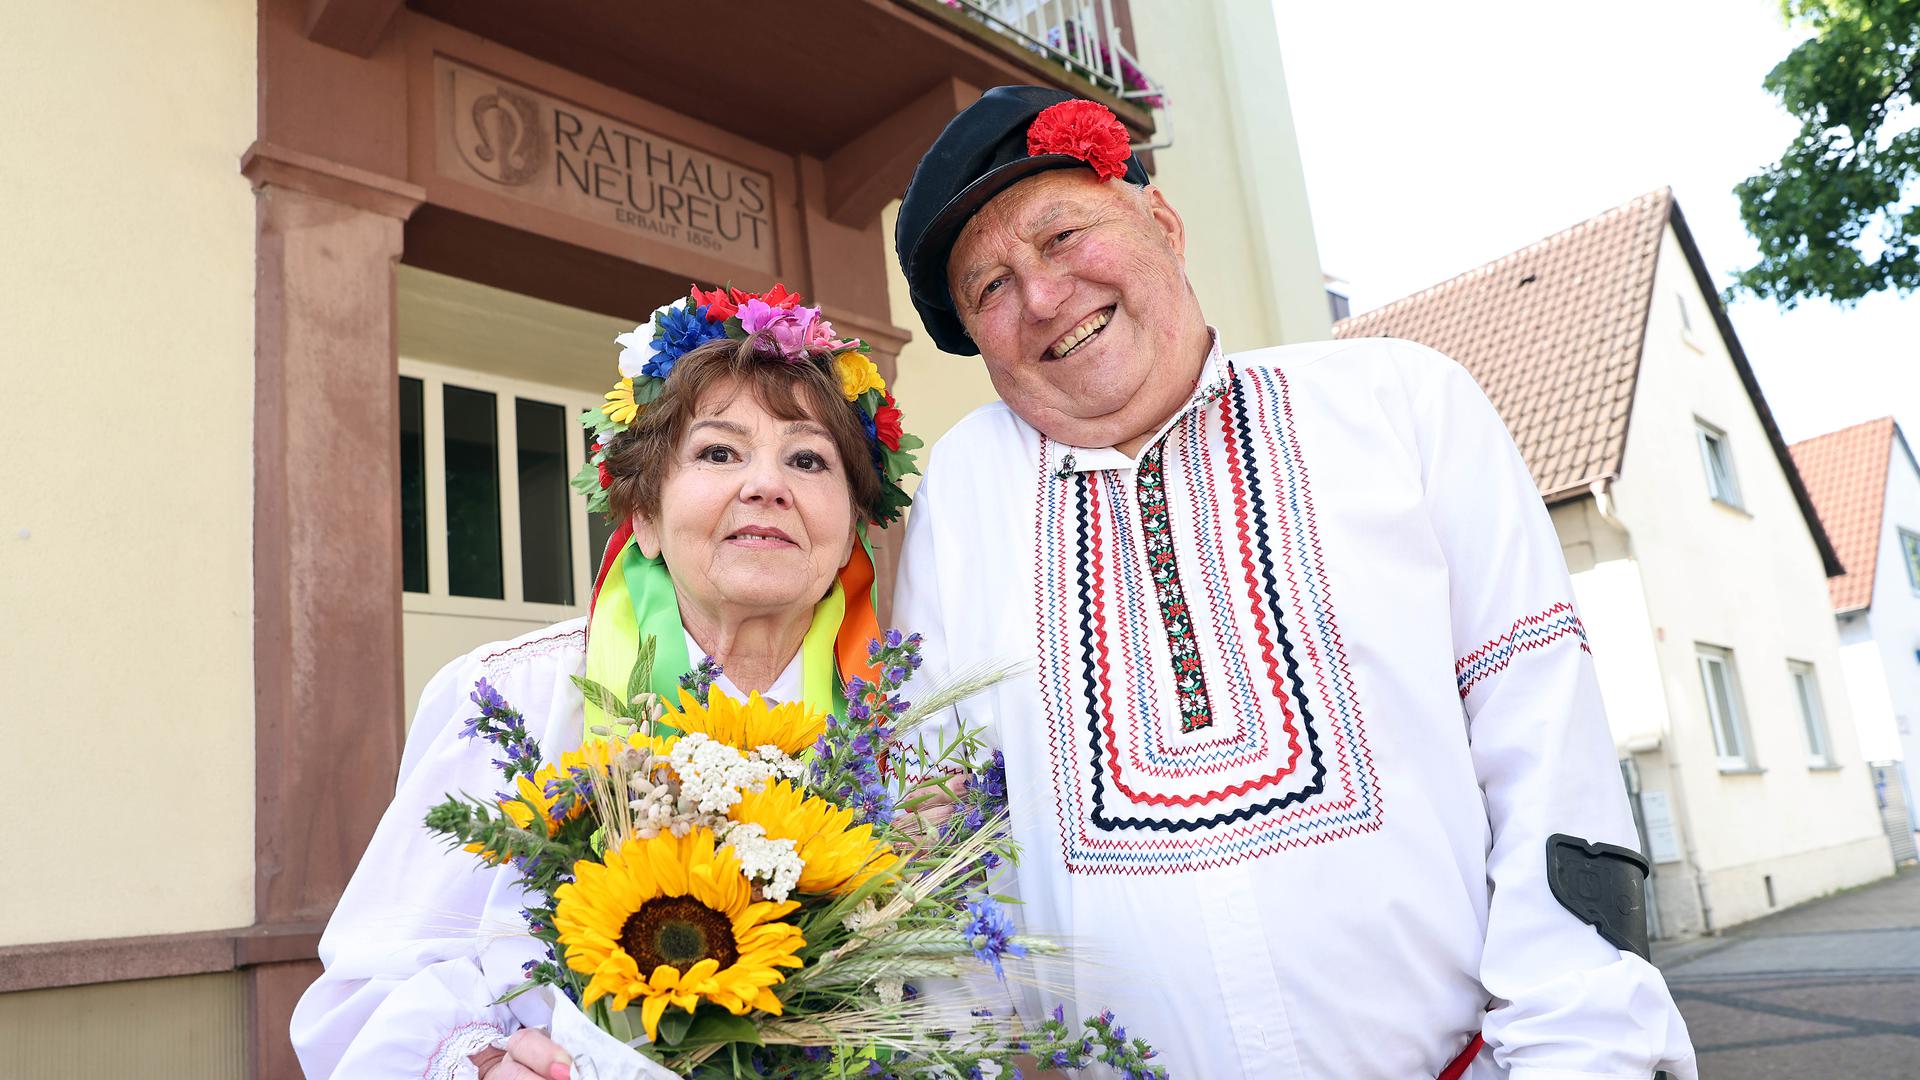 Am 3. Juni 2022 heiraten in ukrainischer Tracht im Rathaus Neureut Larysa Valkova (71 Jahre alt) und Josef Richter (81 Jahre).